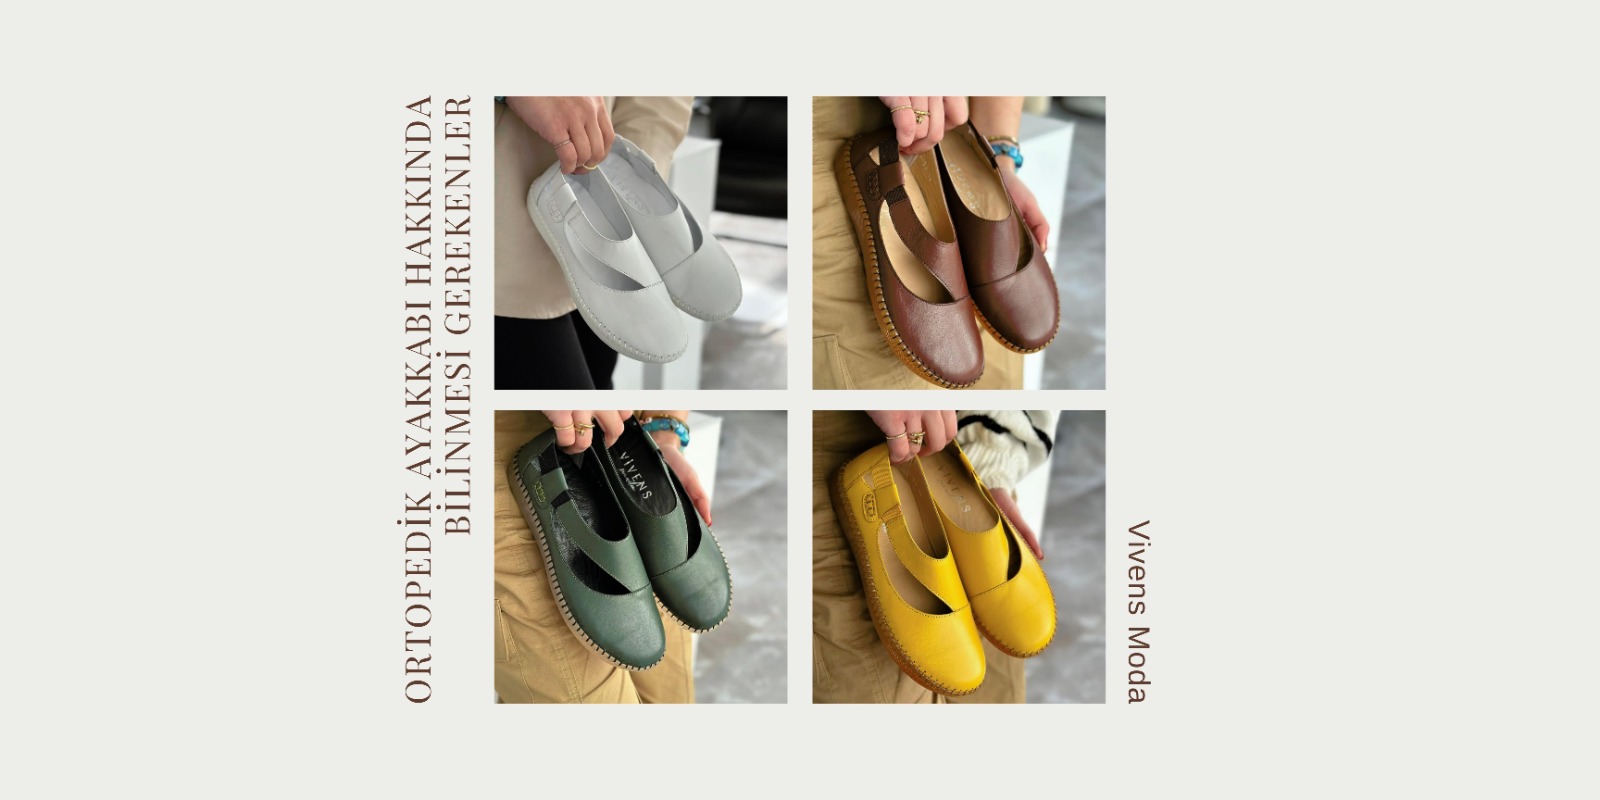 vivens moda, ortopedik ayakkabı, ortopedik ayakkabı modelleri